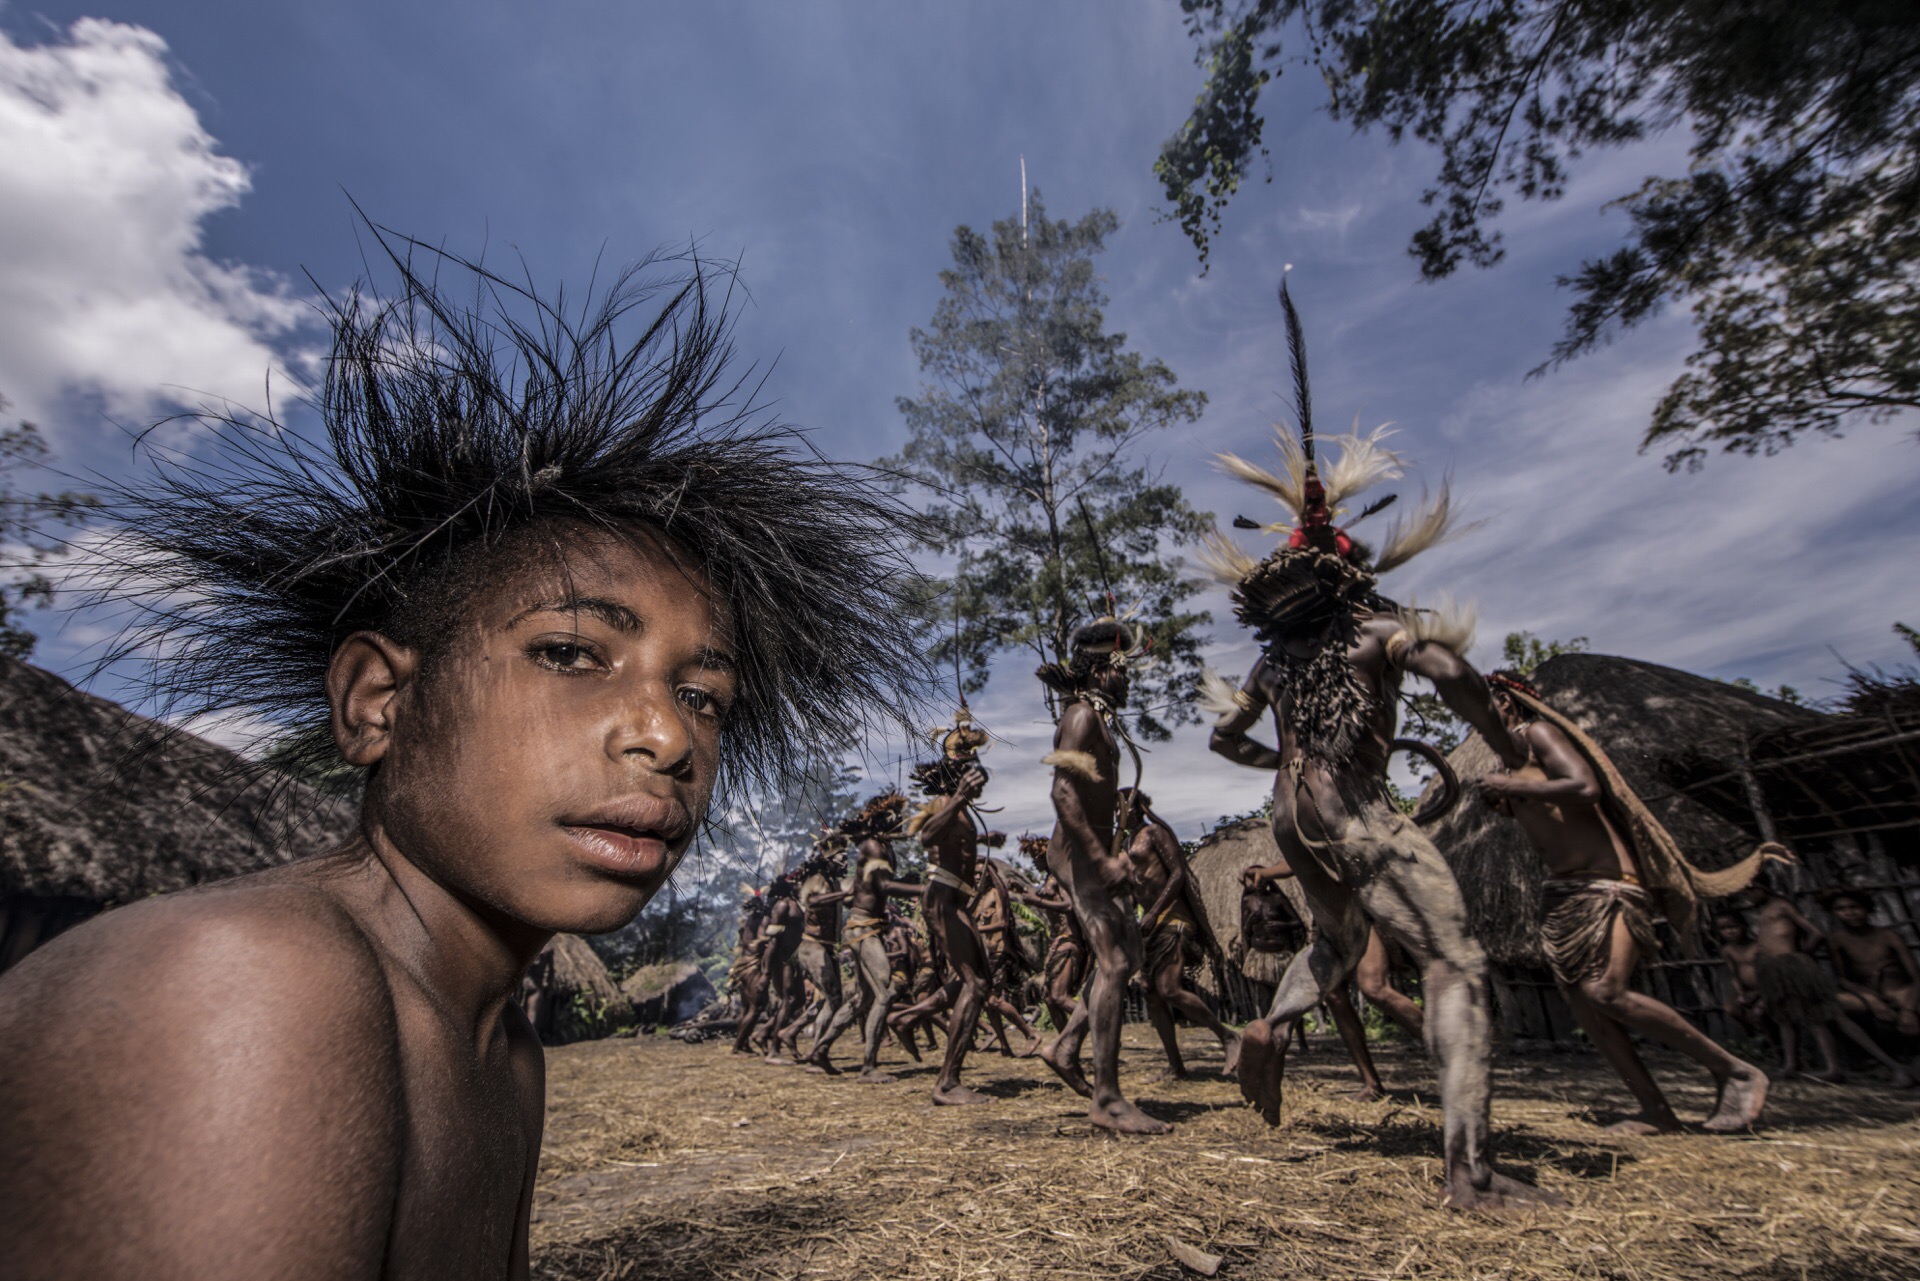 瓦梅纳的食人部落。位于印度尼西亚最东部的巴布亚岛中部，属于赤道高原地区，海拔约1200-1500米。